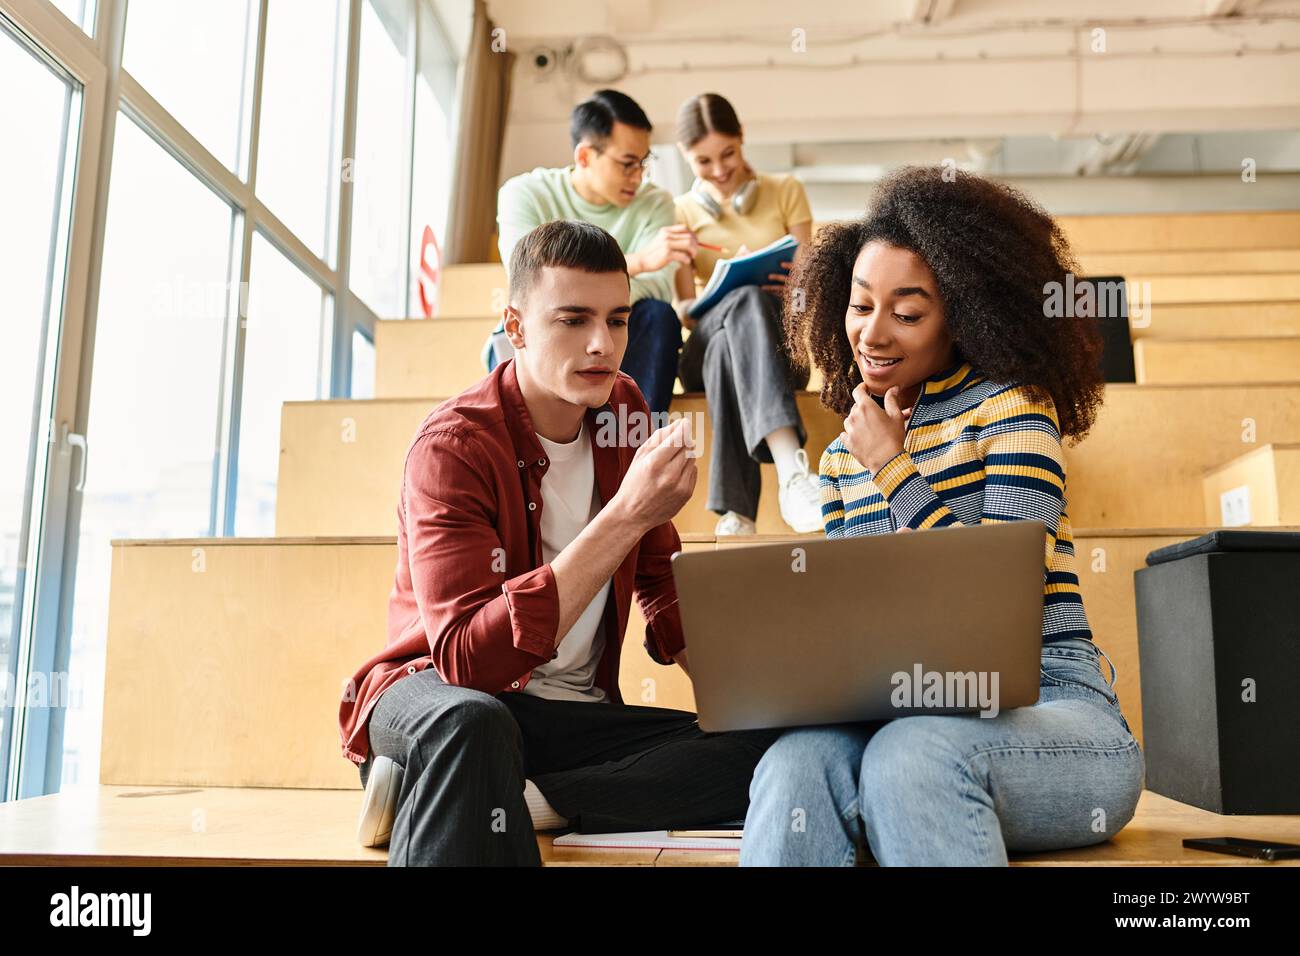 Multikulturelle Gruppe junger Studenten, die auf den Stufen eines Gebäudes sitzen und sich auf den Laptop-Bildschirm konzentrieren Stockfoto